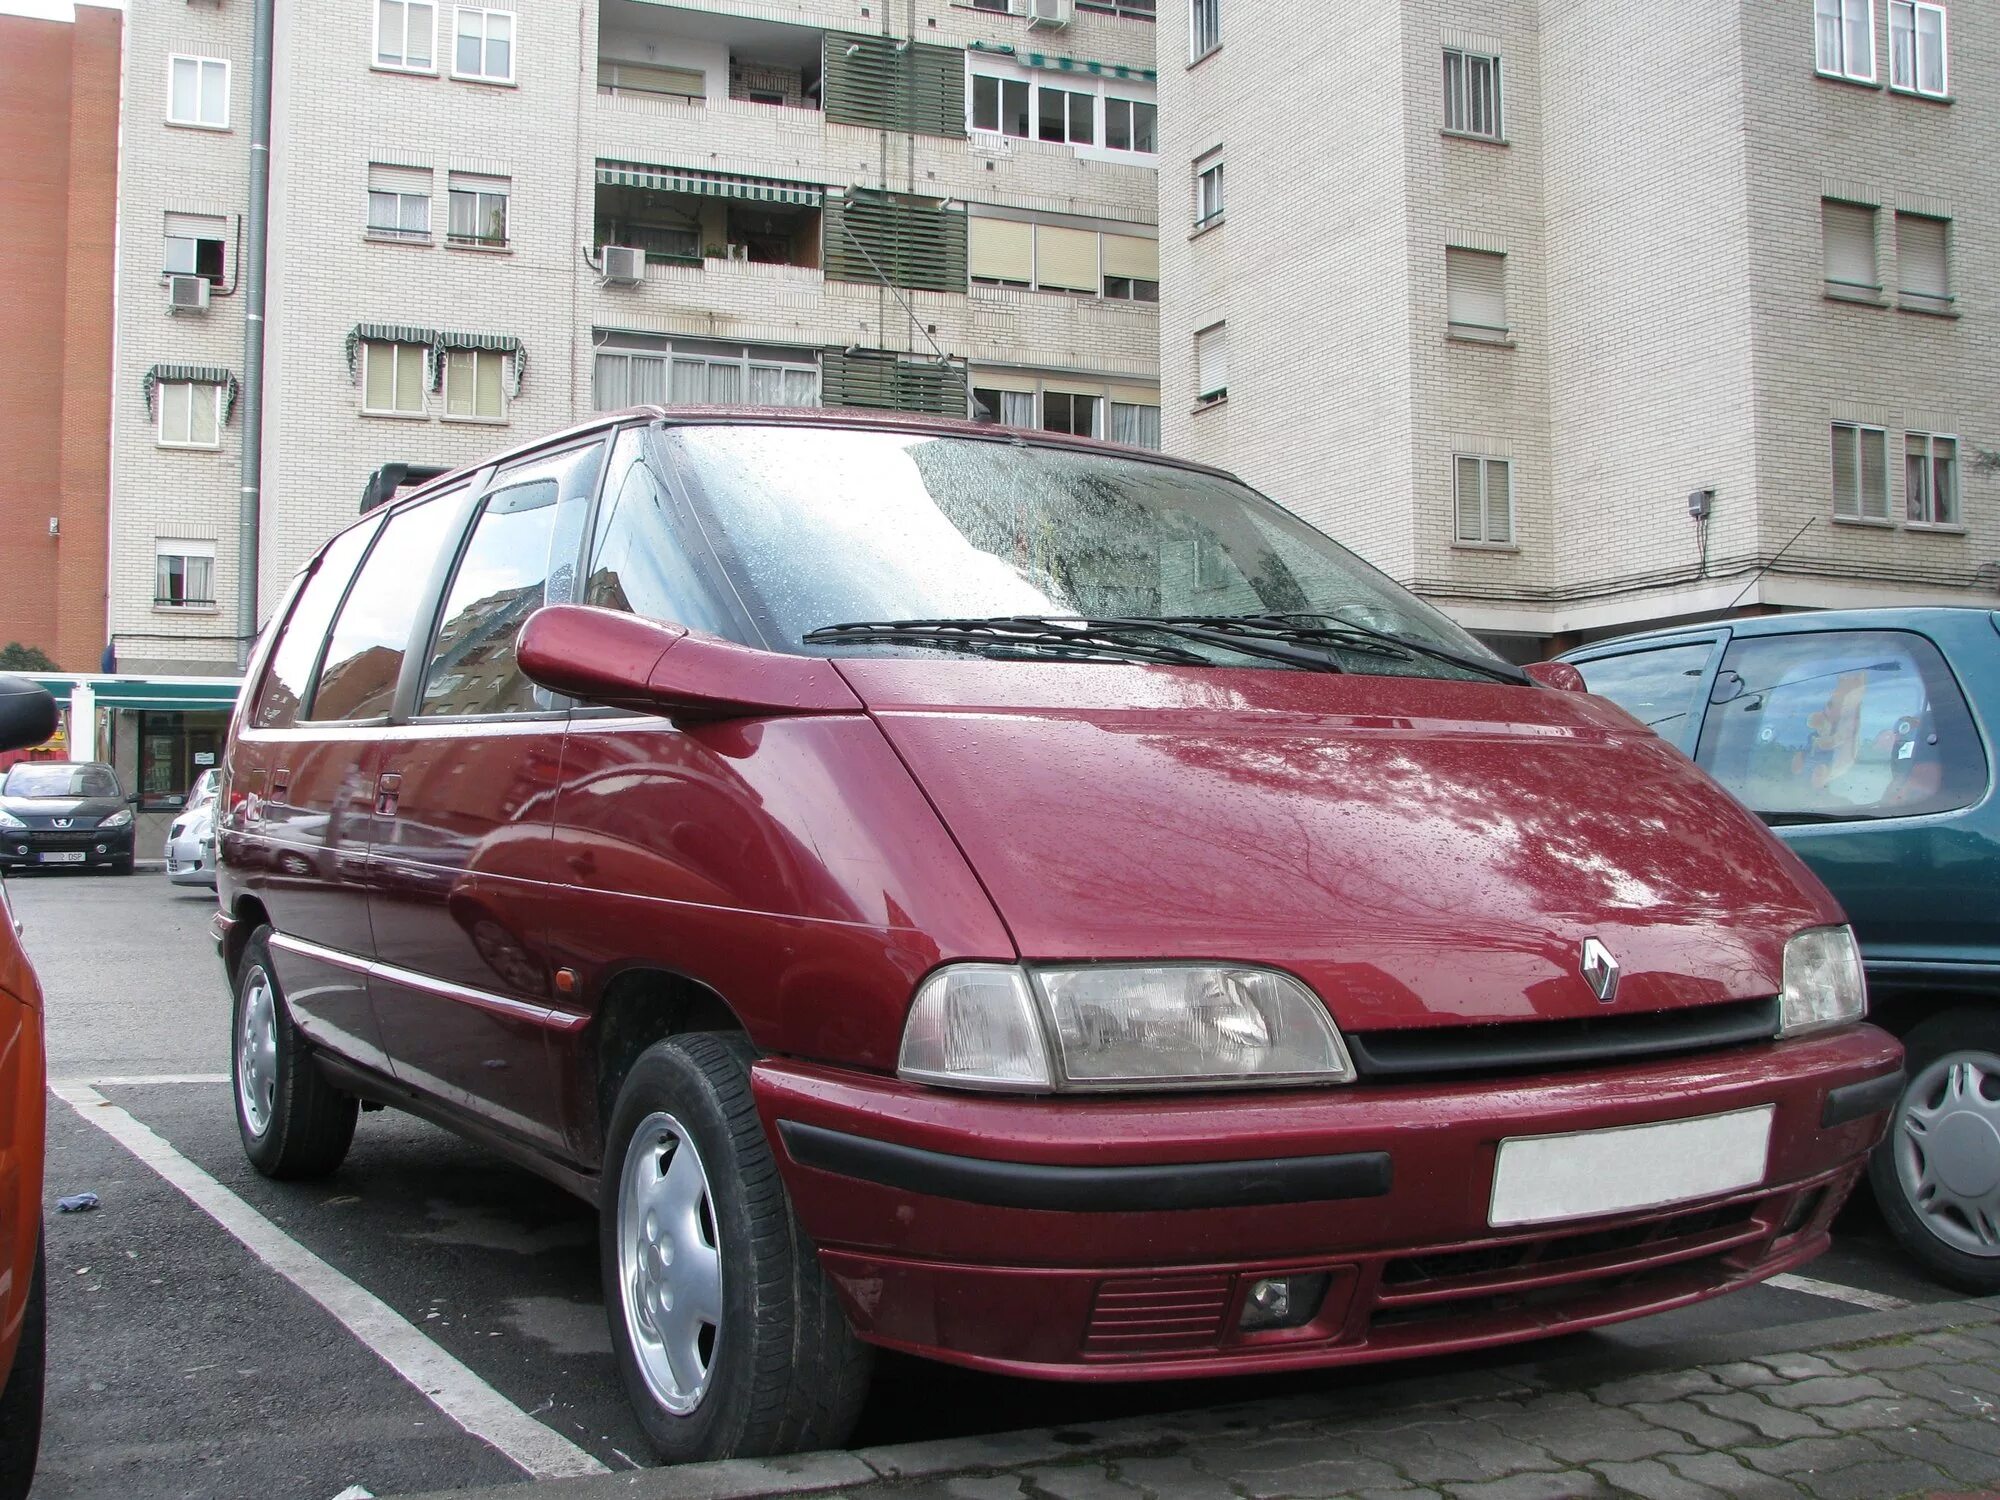 Renault espace 2. Рено Эспейс 2 1996. Renault Espace 2 второго поколения. Рено минивэн Эспейс 2.